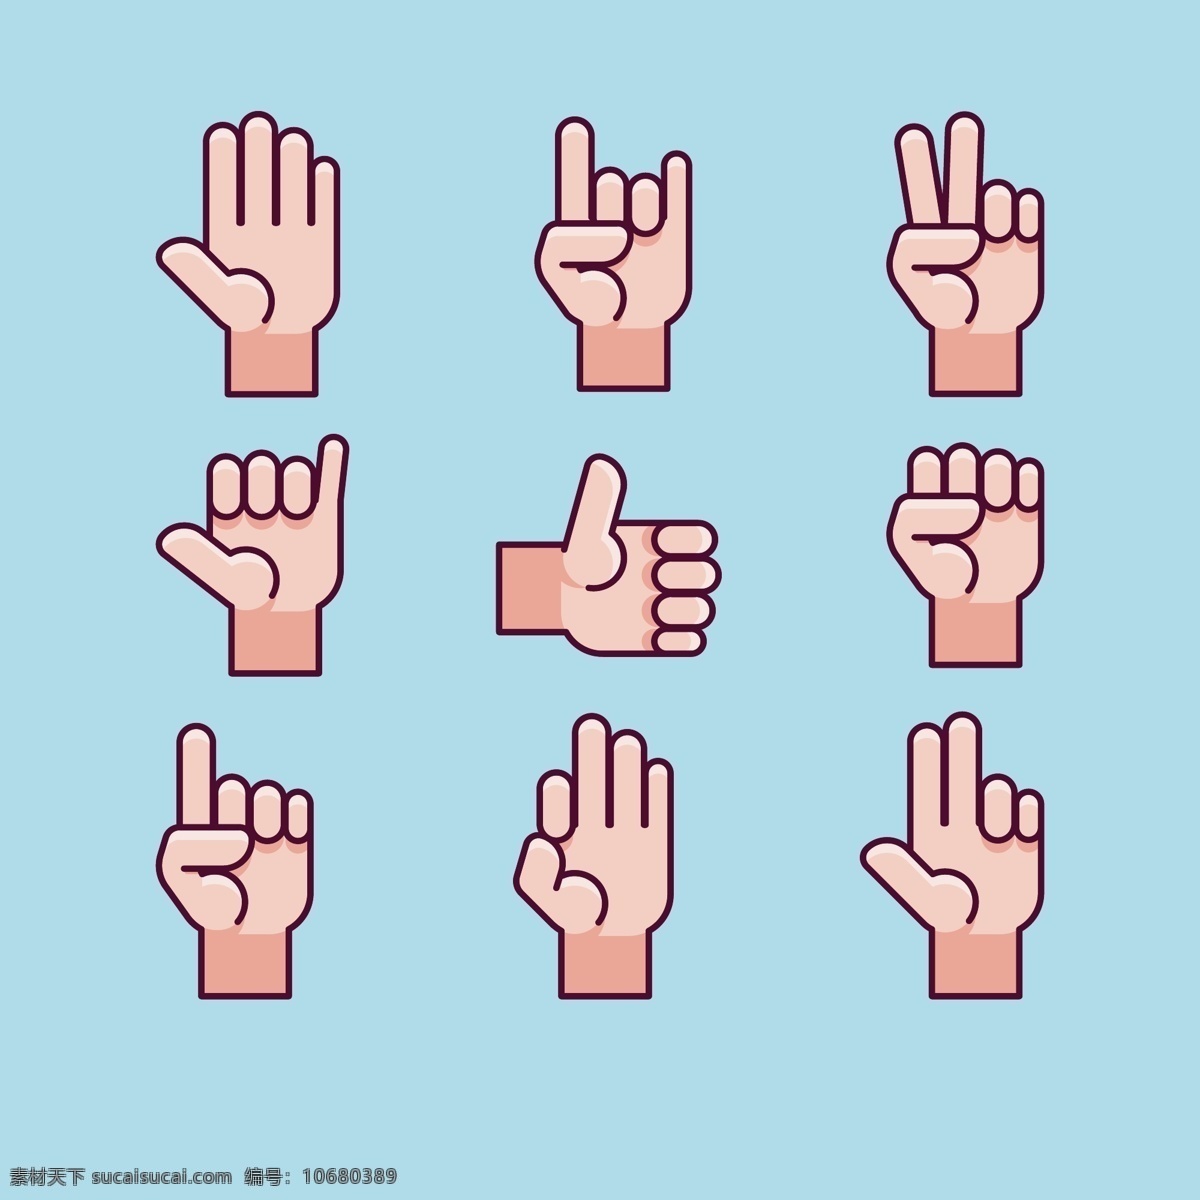 手势 矢量 素材图片 手势矢量素材 手势矢量 手势素材 手 共享设计矢量